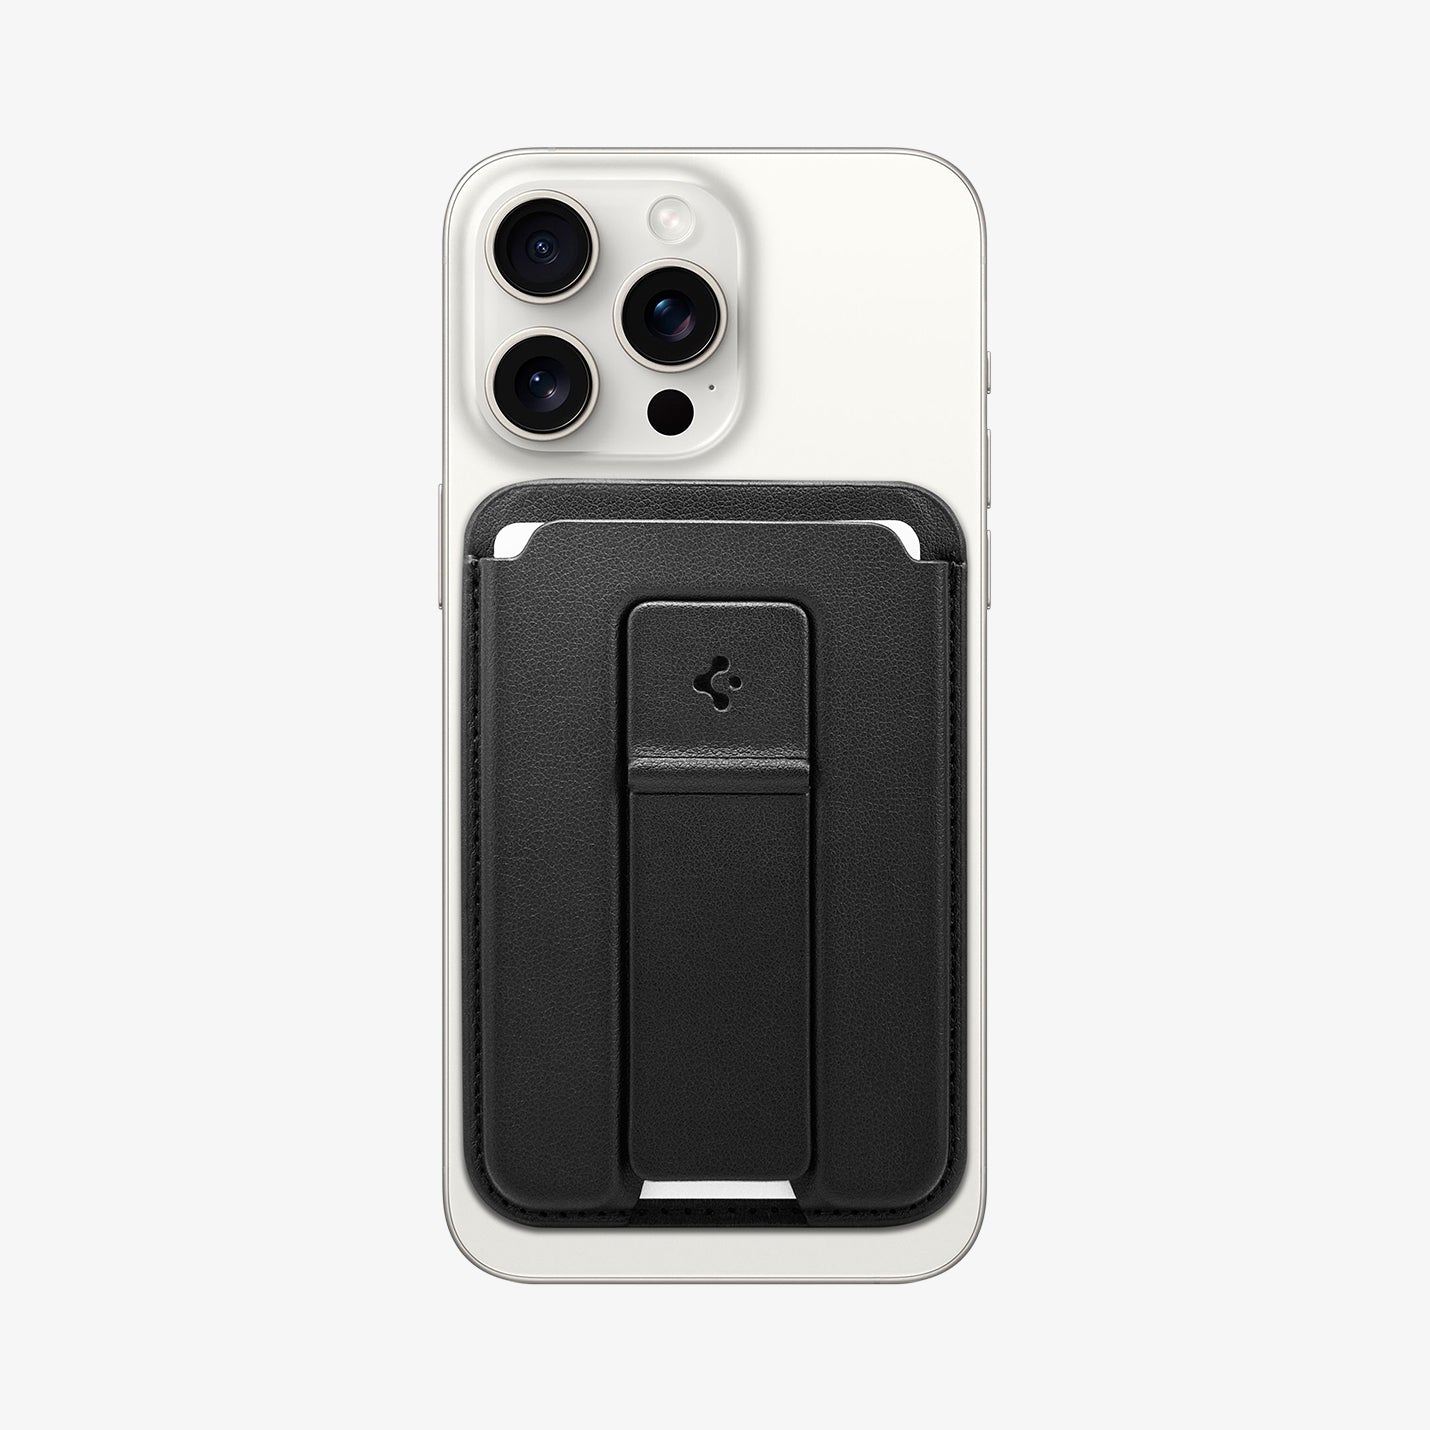 Spigen Flex Strap Phone Grip Holder 💸 Price: 4.9 BD